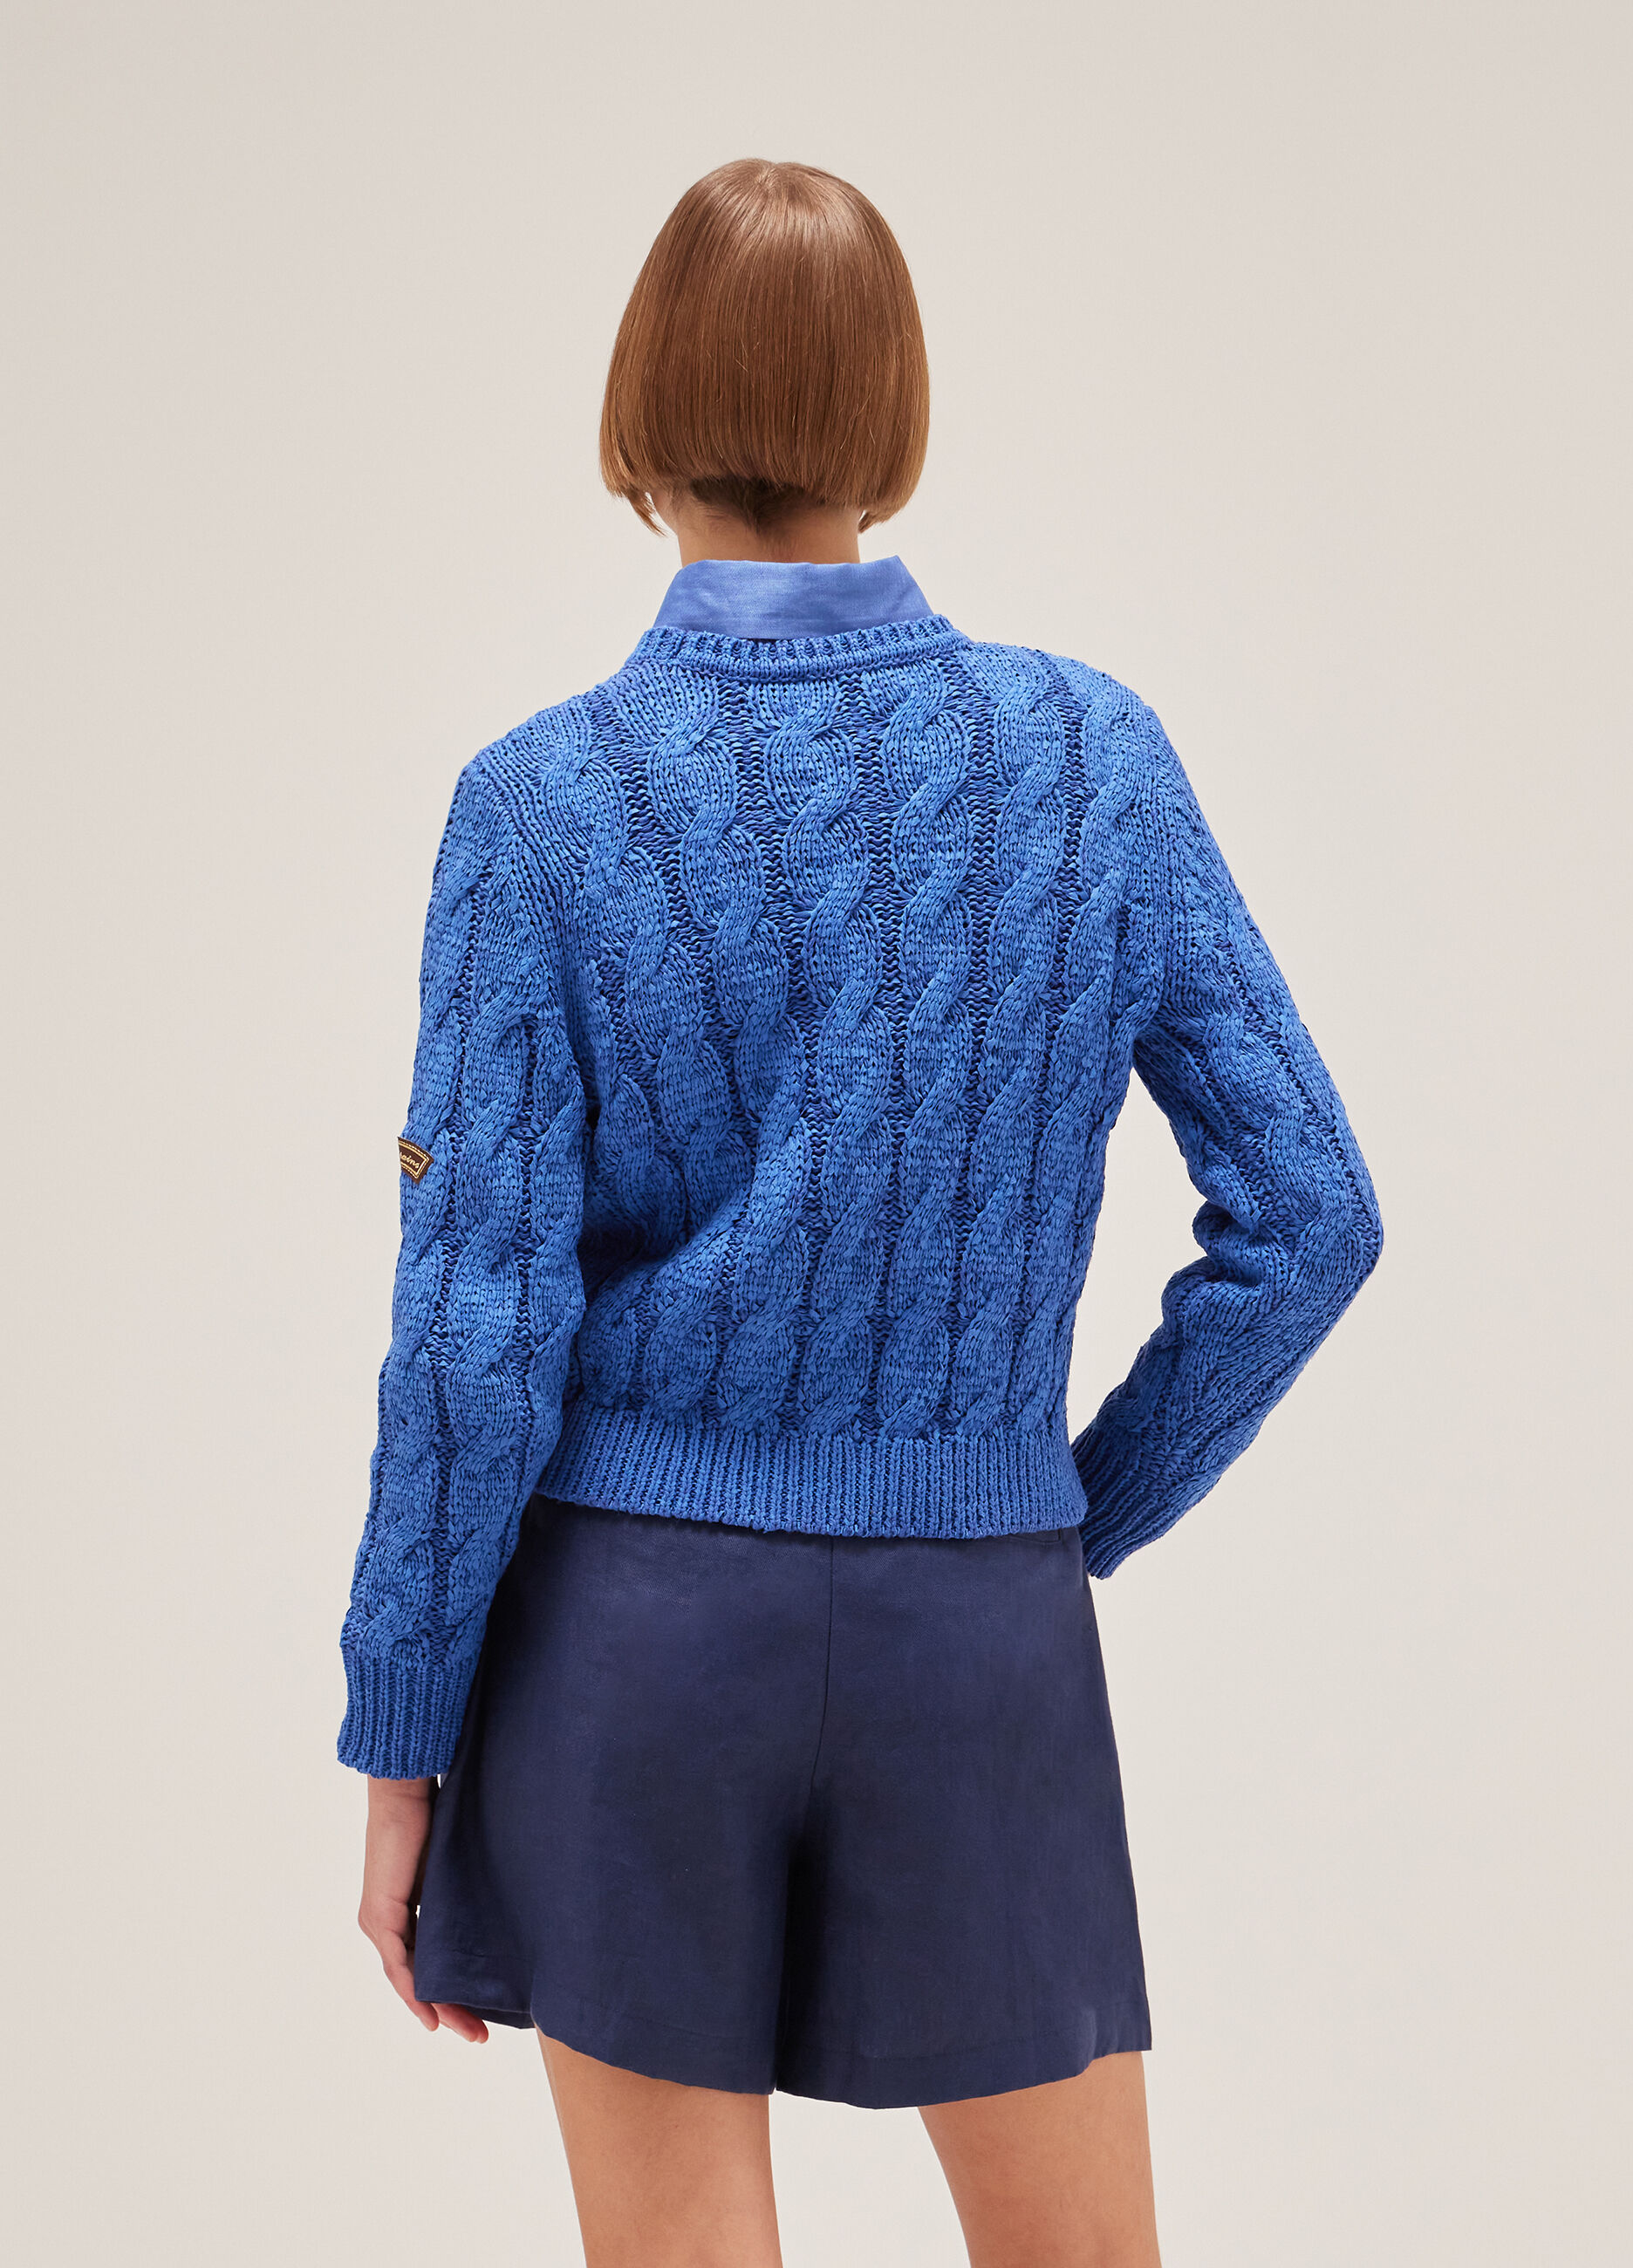 Maglione tricot a trecce_2